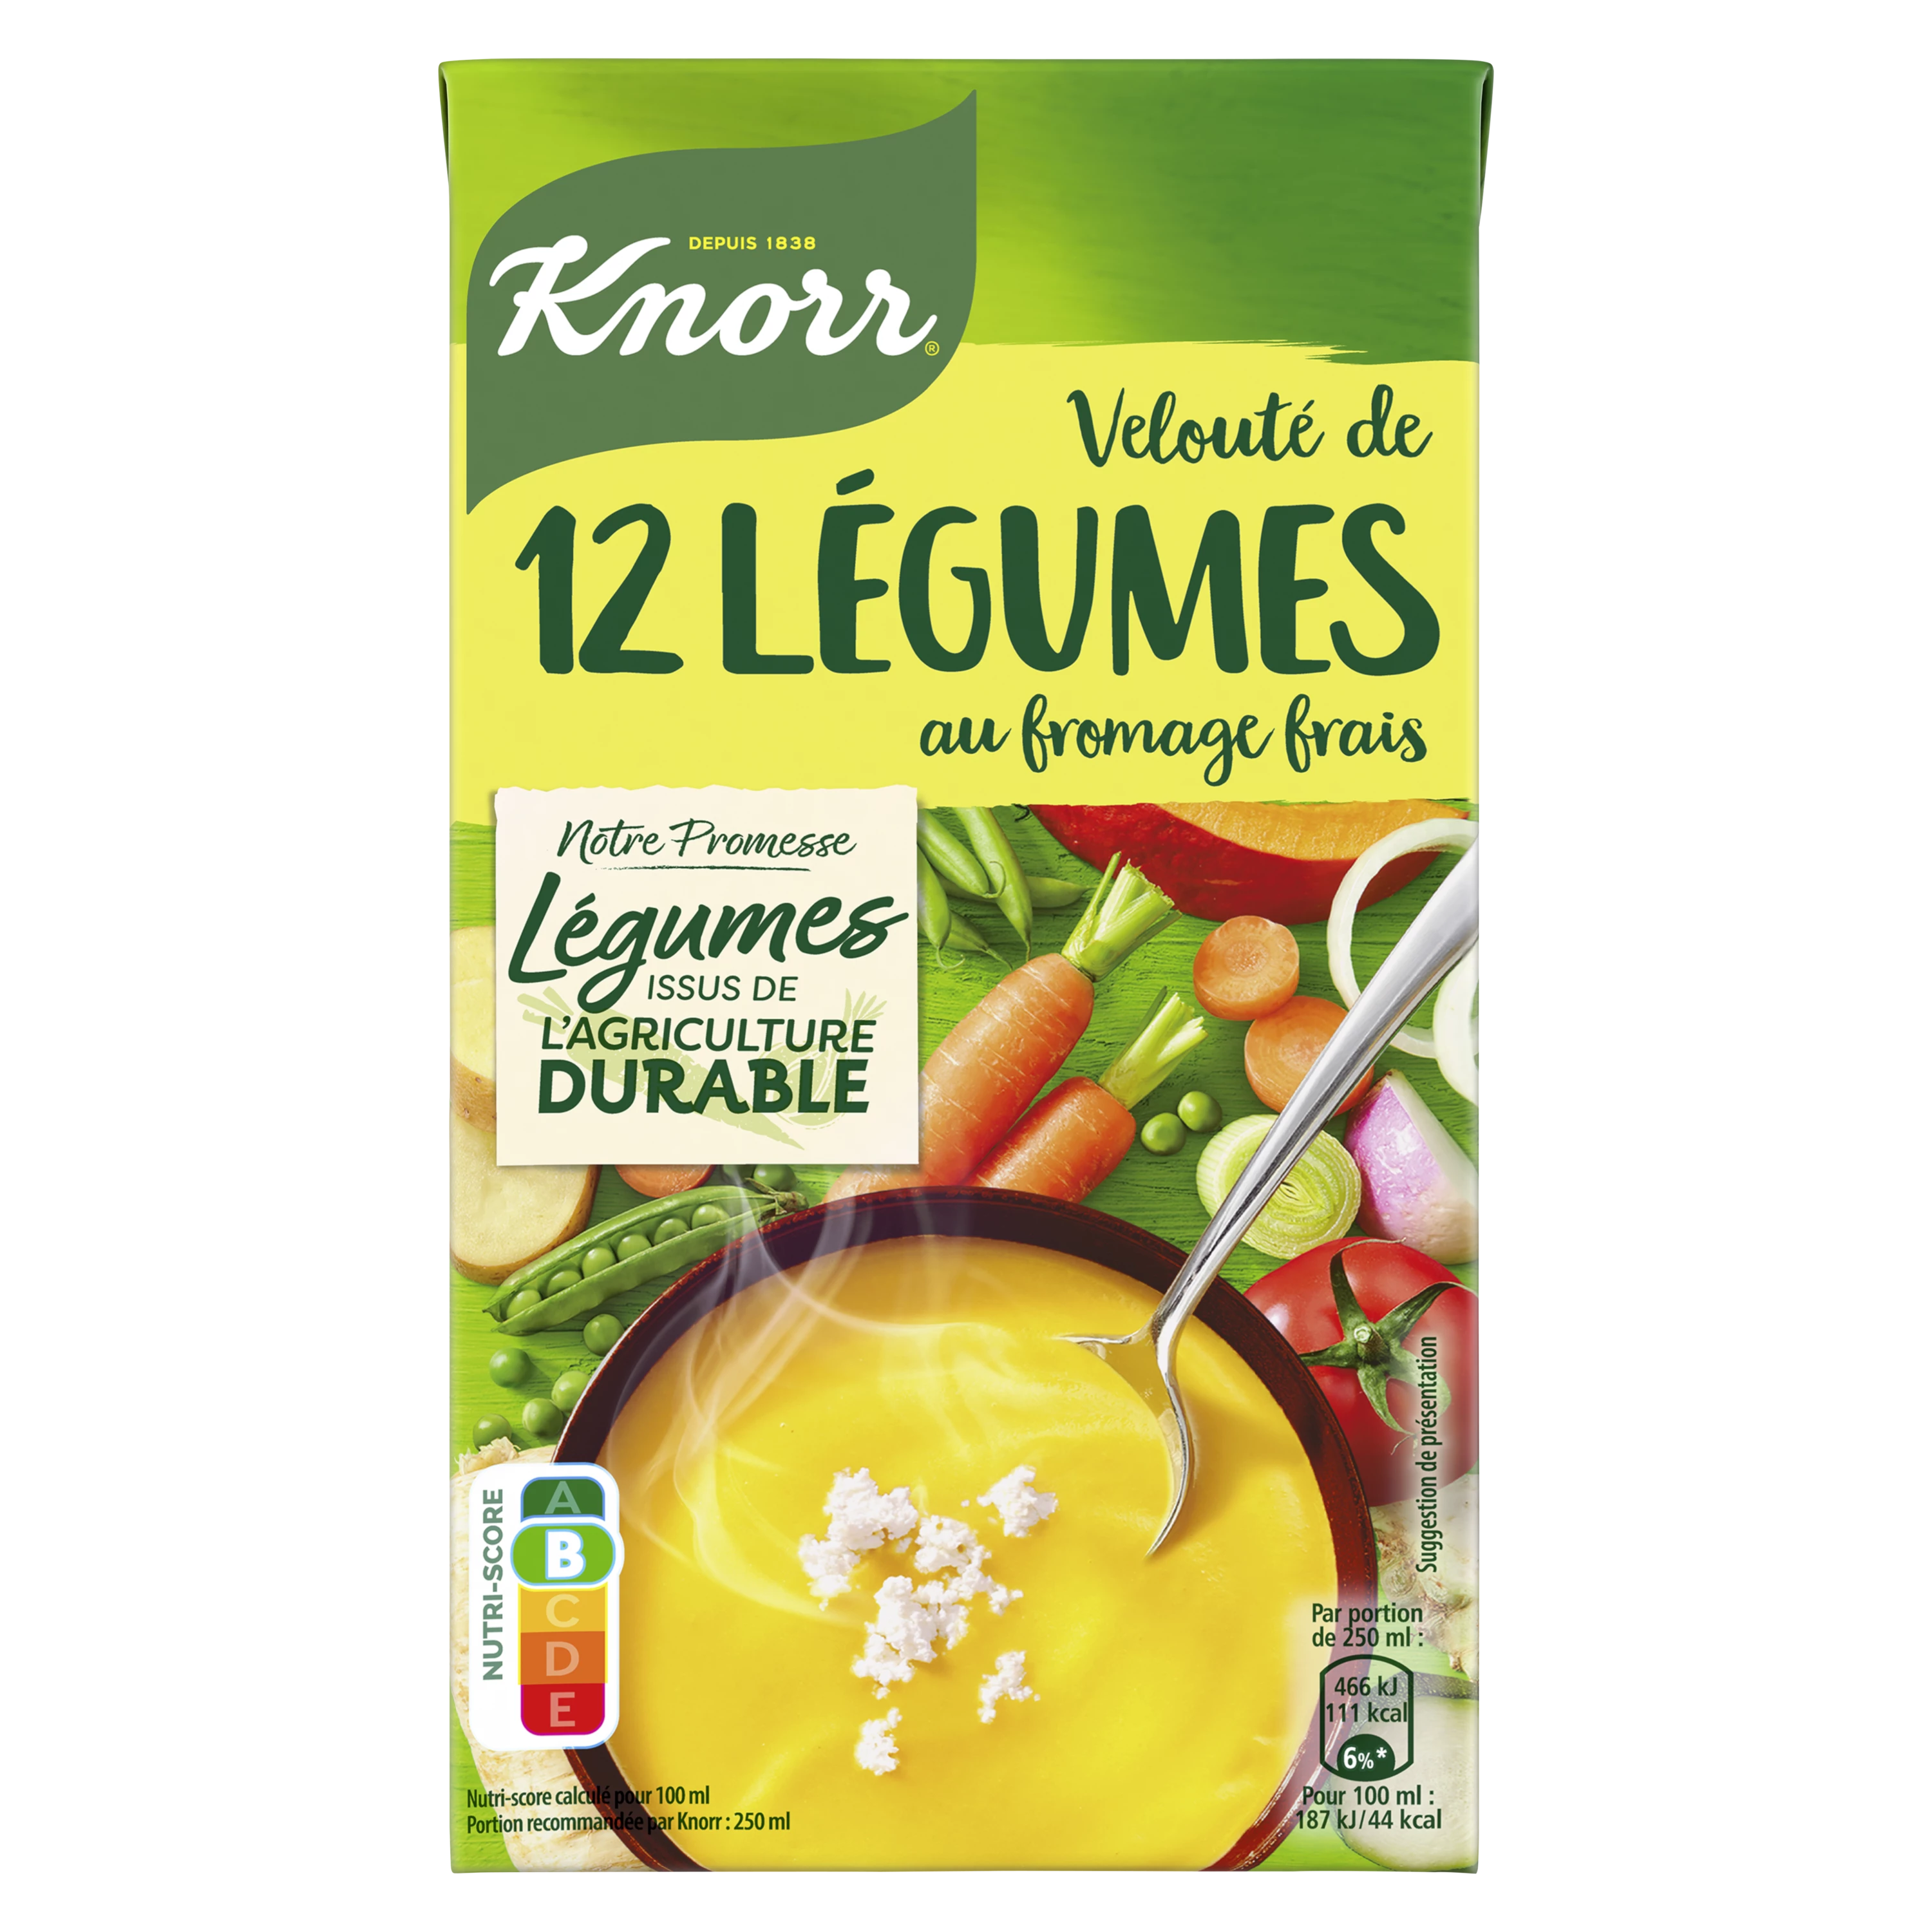 12 Sopa Crema De Queso Crema De Verduras, 1l - KNORR